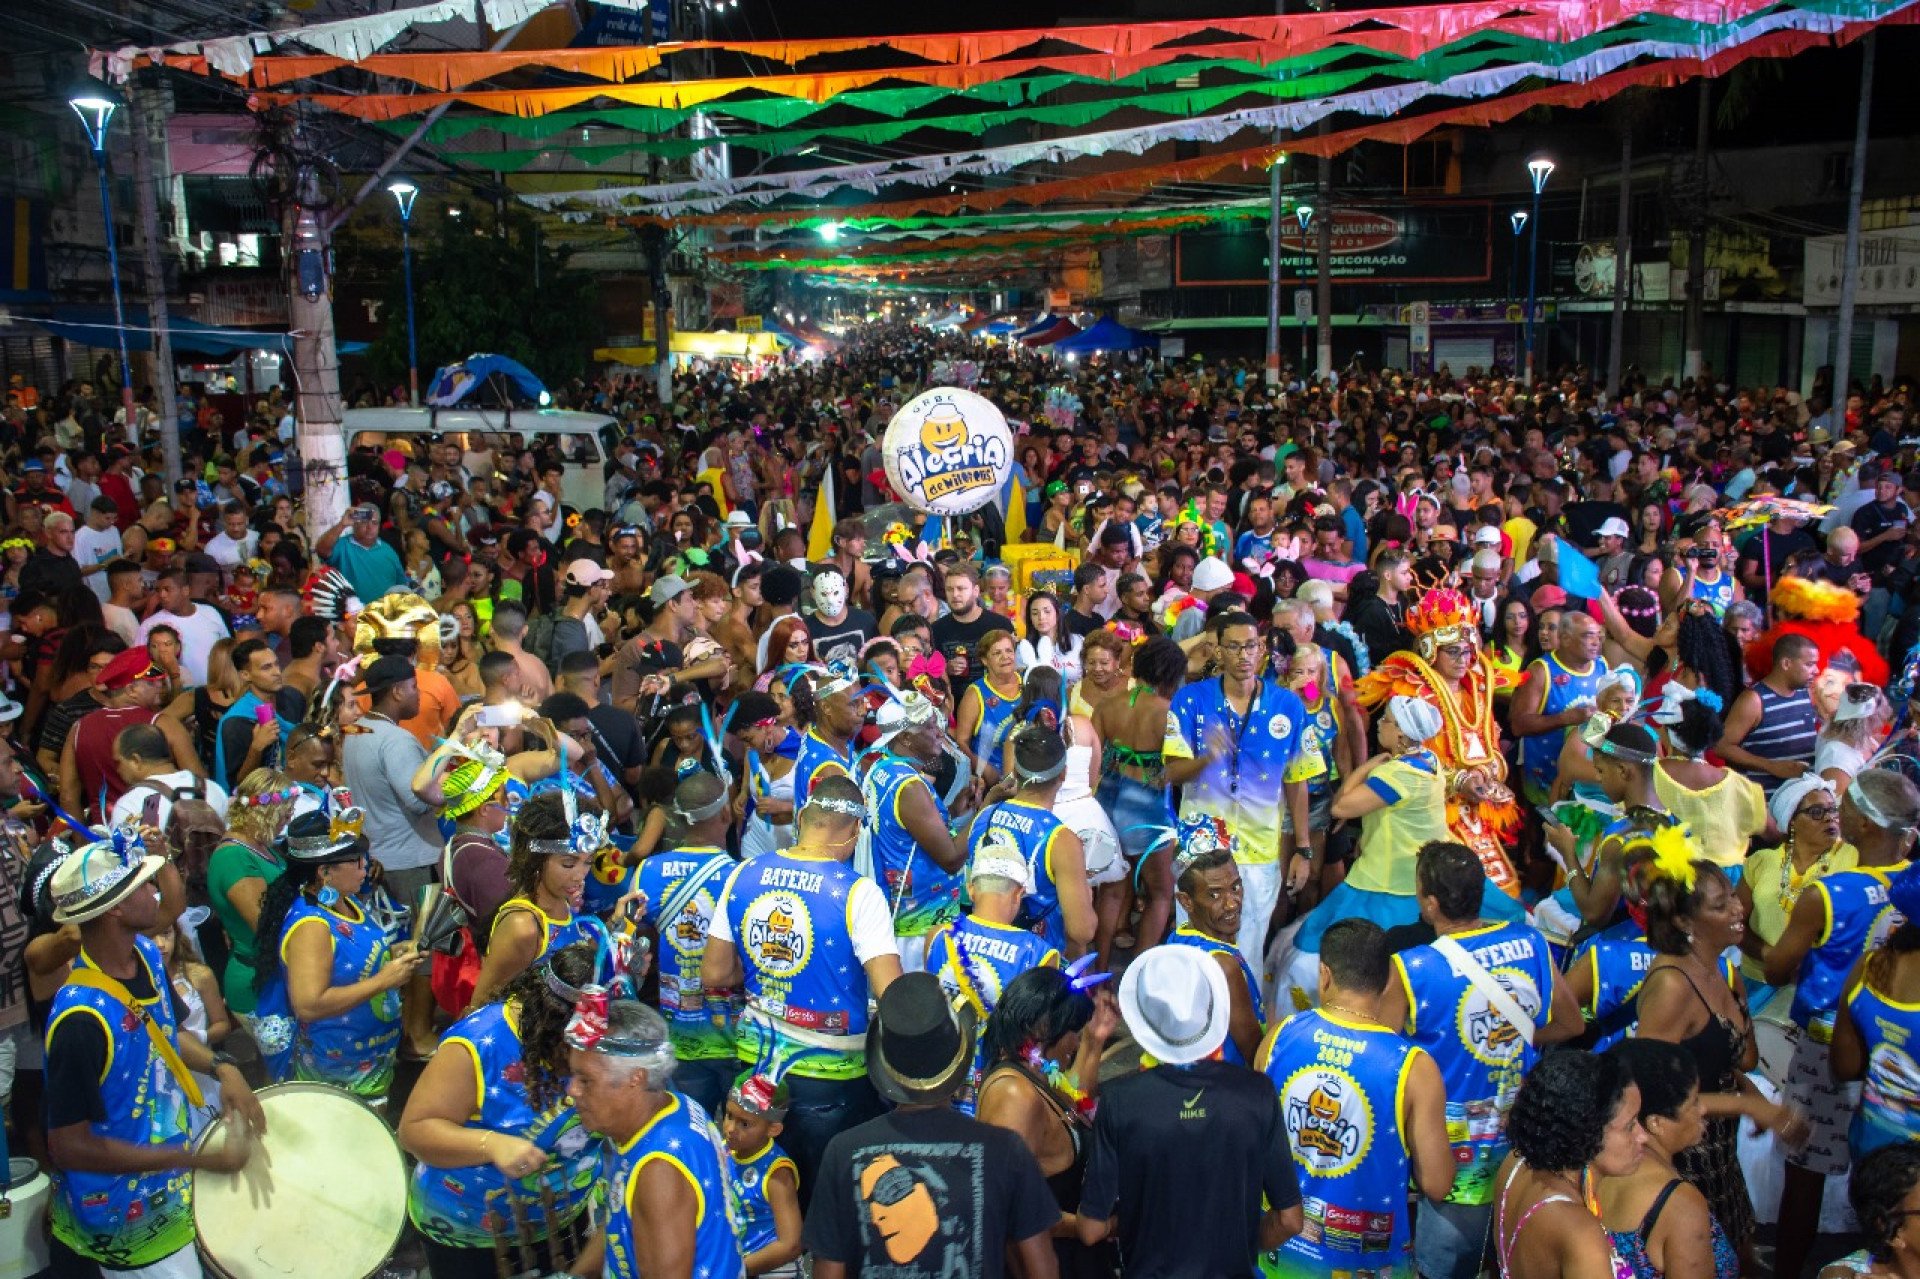 O grande palco na Estrada Mirandela vai receber grupos que irão interpretar marchinhas infantis, e à noite, será a vez dos adultos darem vazão à alegria carnavalesca - Divulgação / PMN